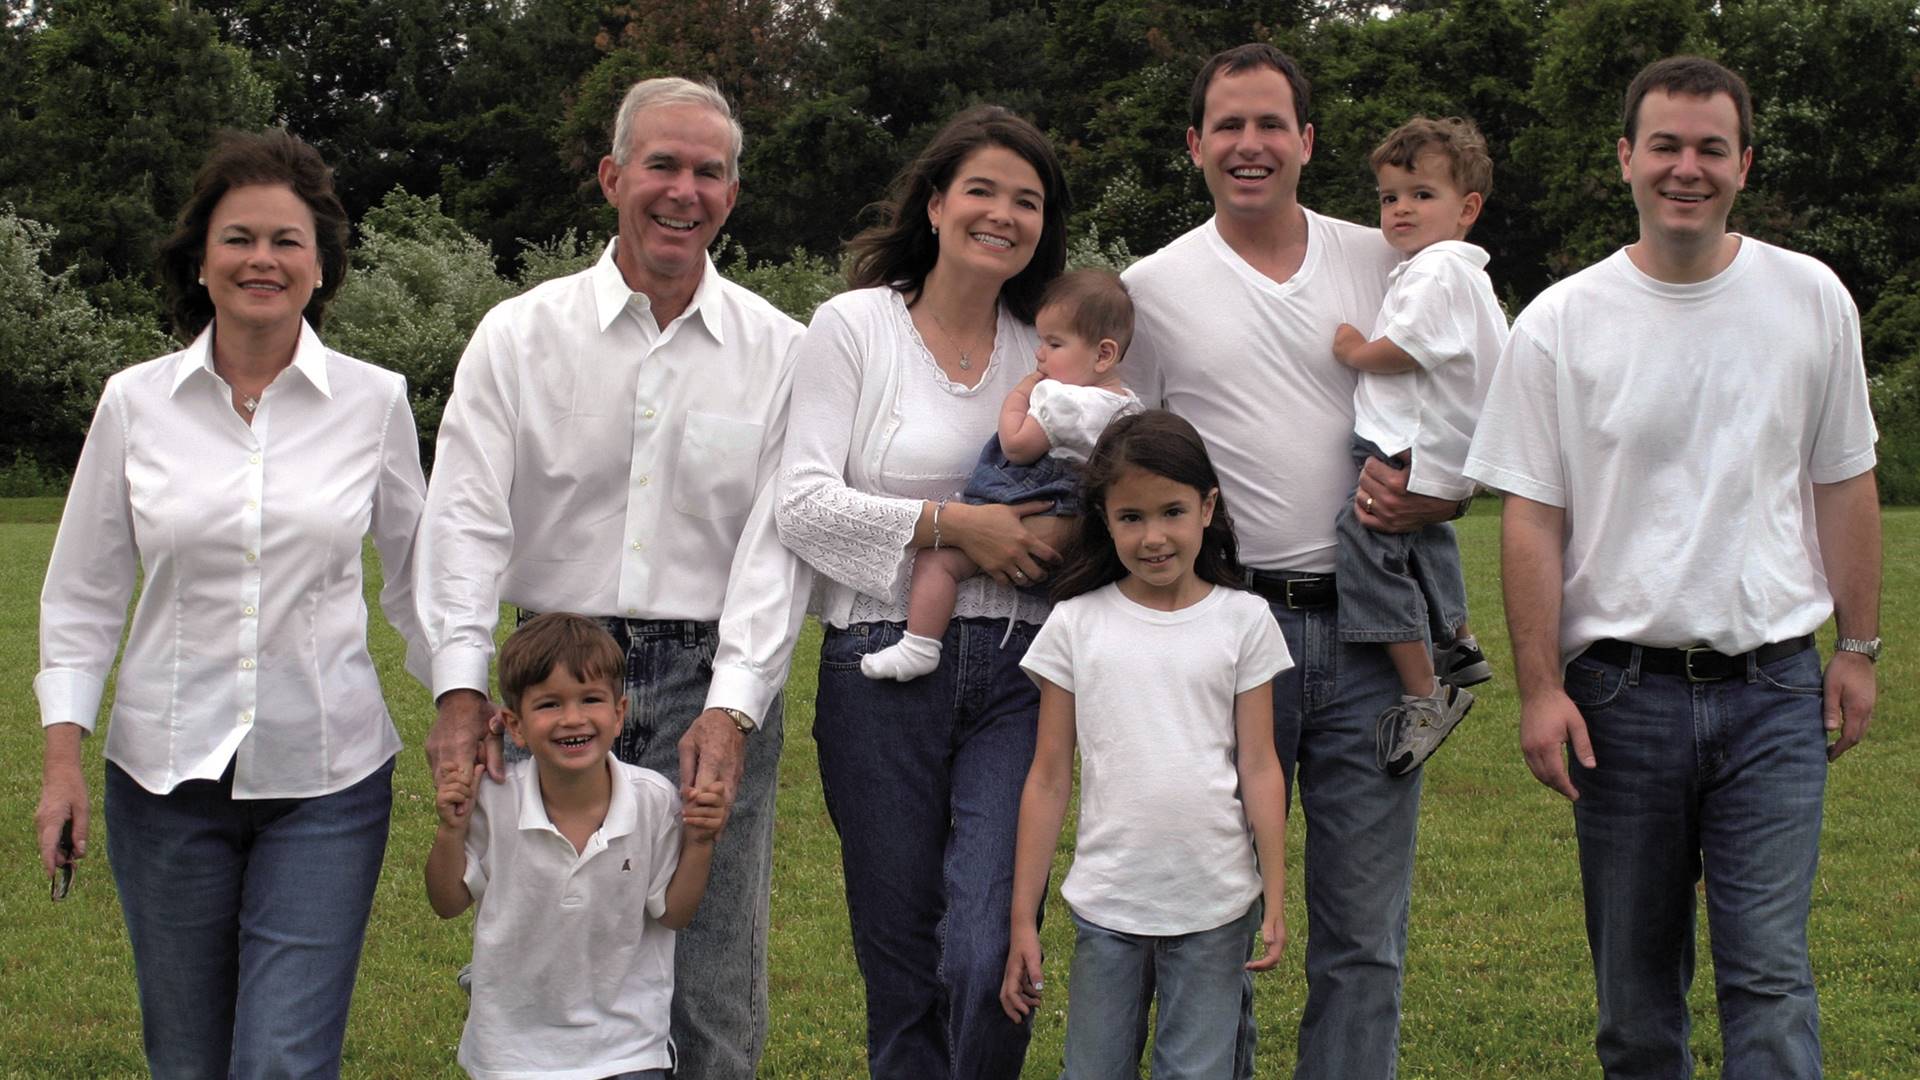 Eine Familie mit vier Kindern und fünf Erwachsenen steht zusammen. Alle tragen weiße Oberteile.